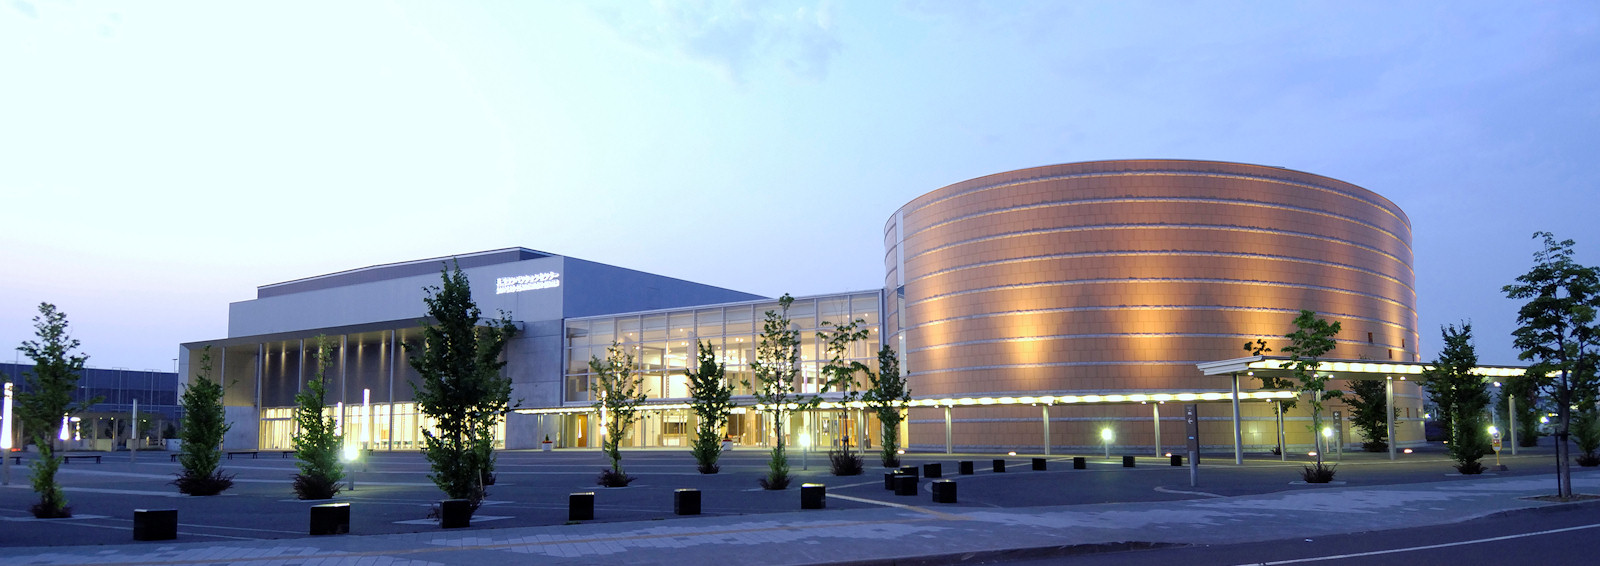 Sapporo Convention Center